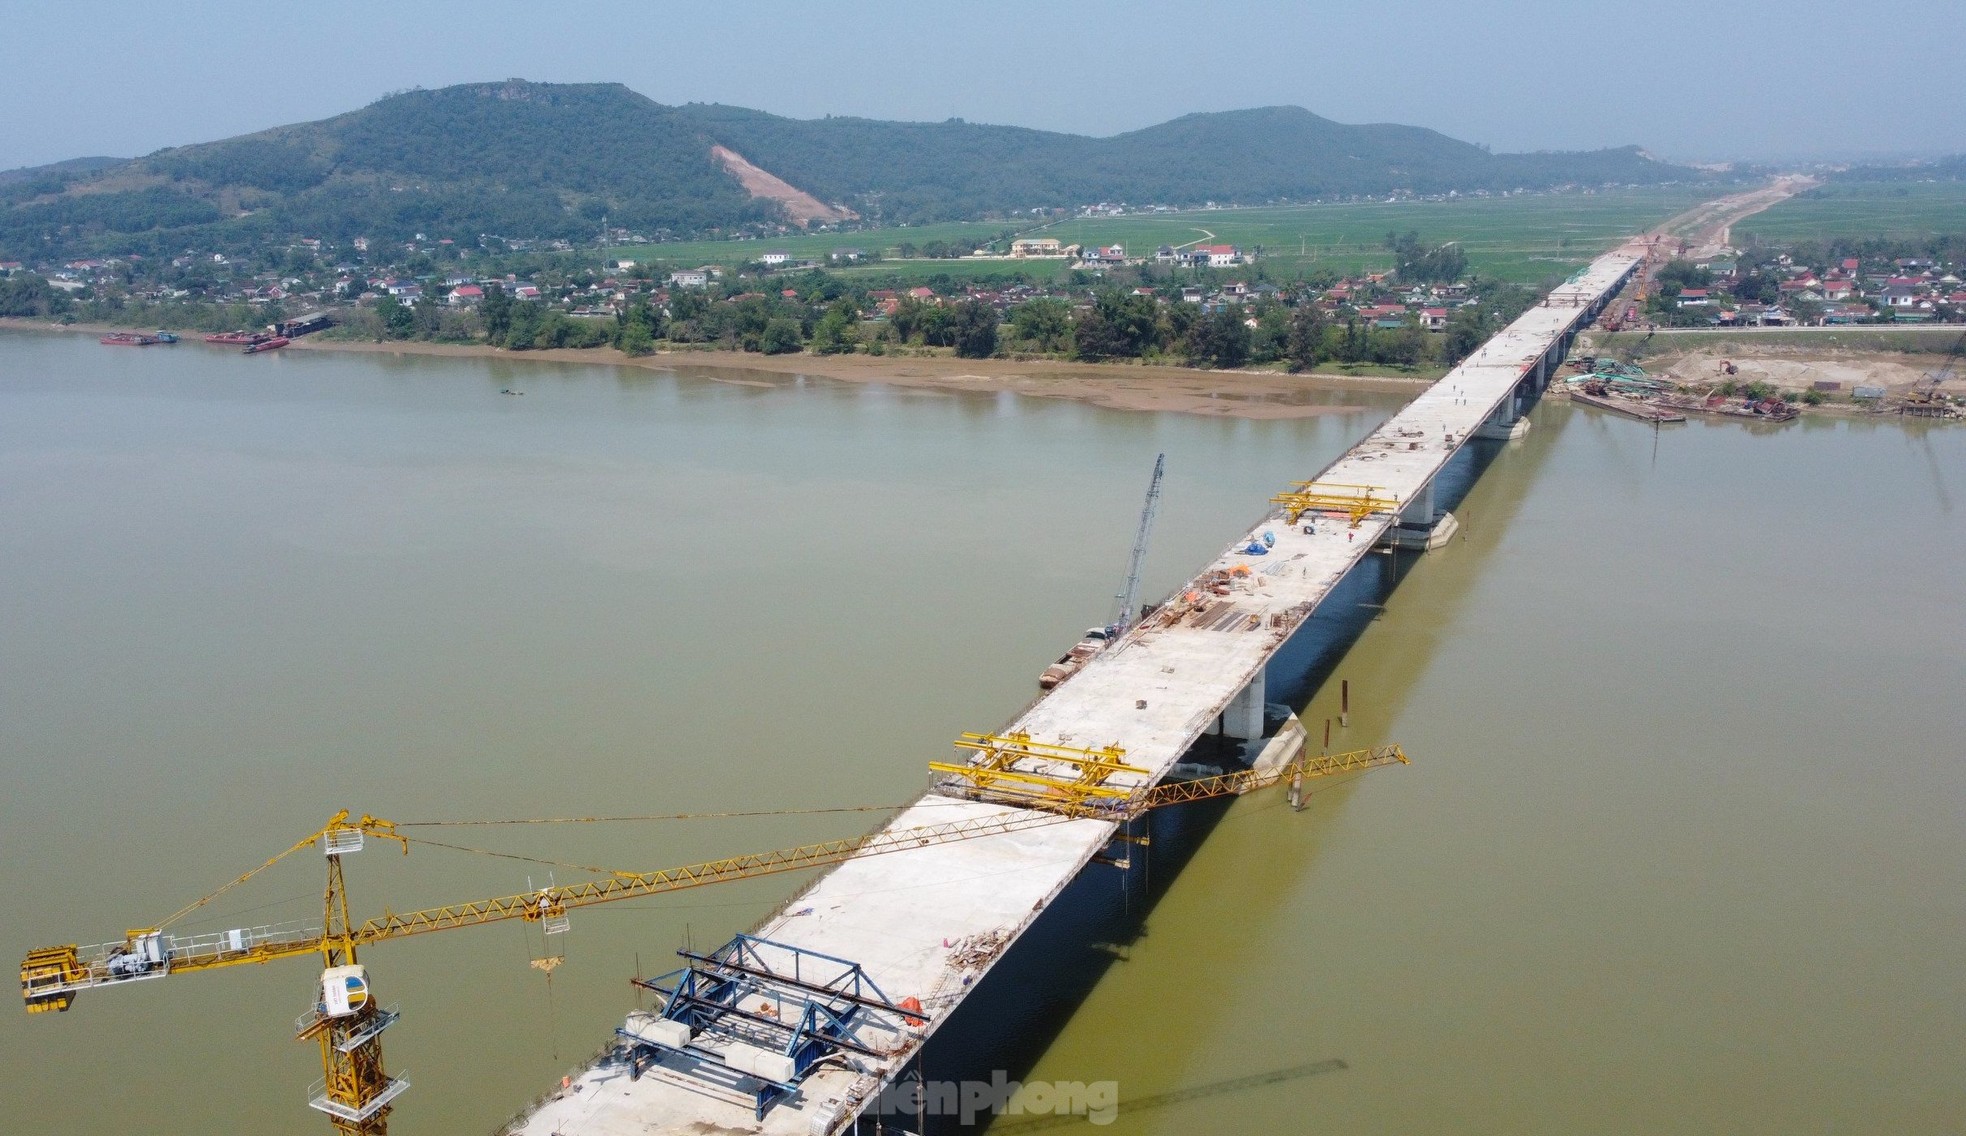 Cầu vượt sông nối 2 tỉnh Nghệ An và Hà Tĩnh trước ngày hợp long- Ảnh 4.